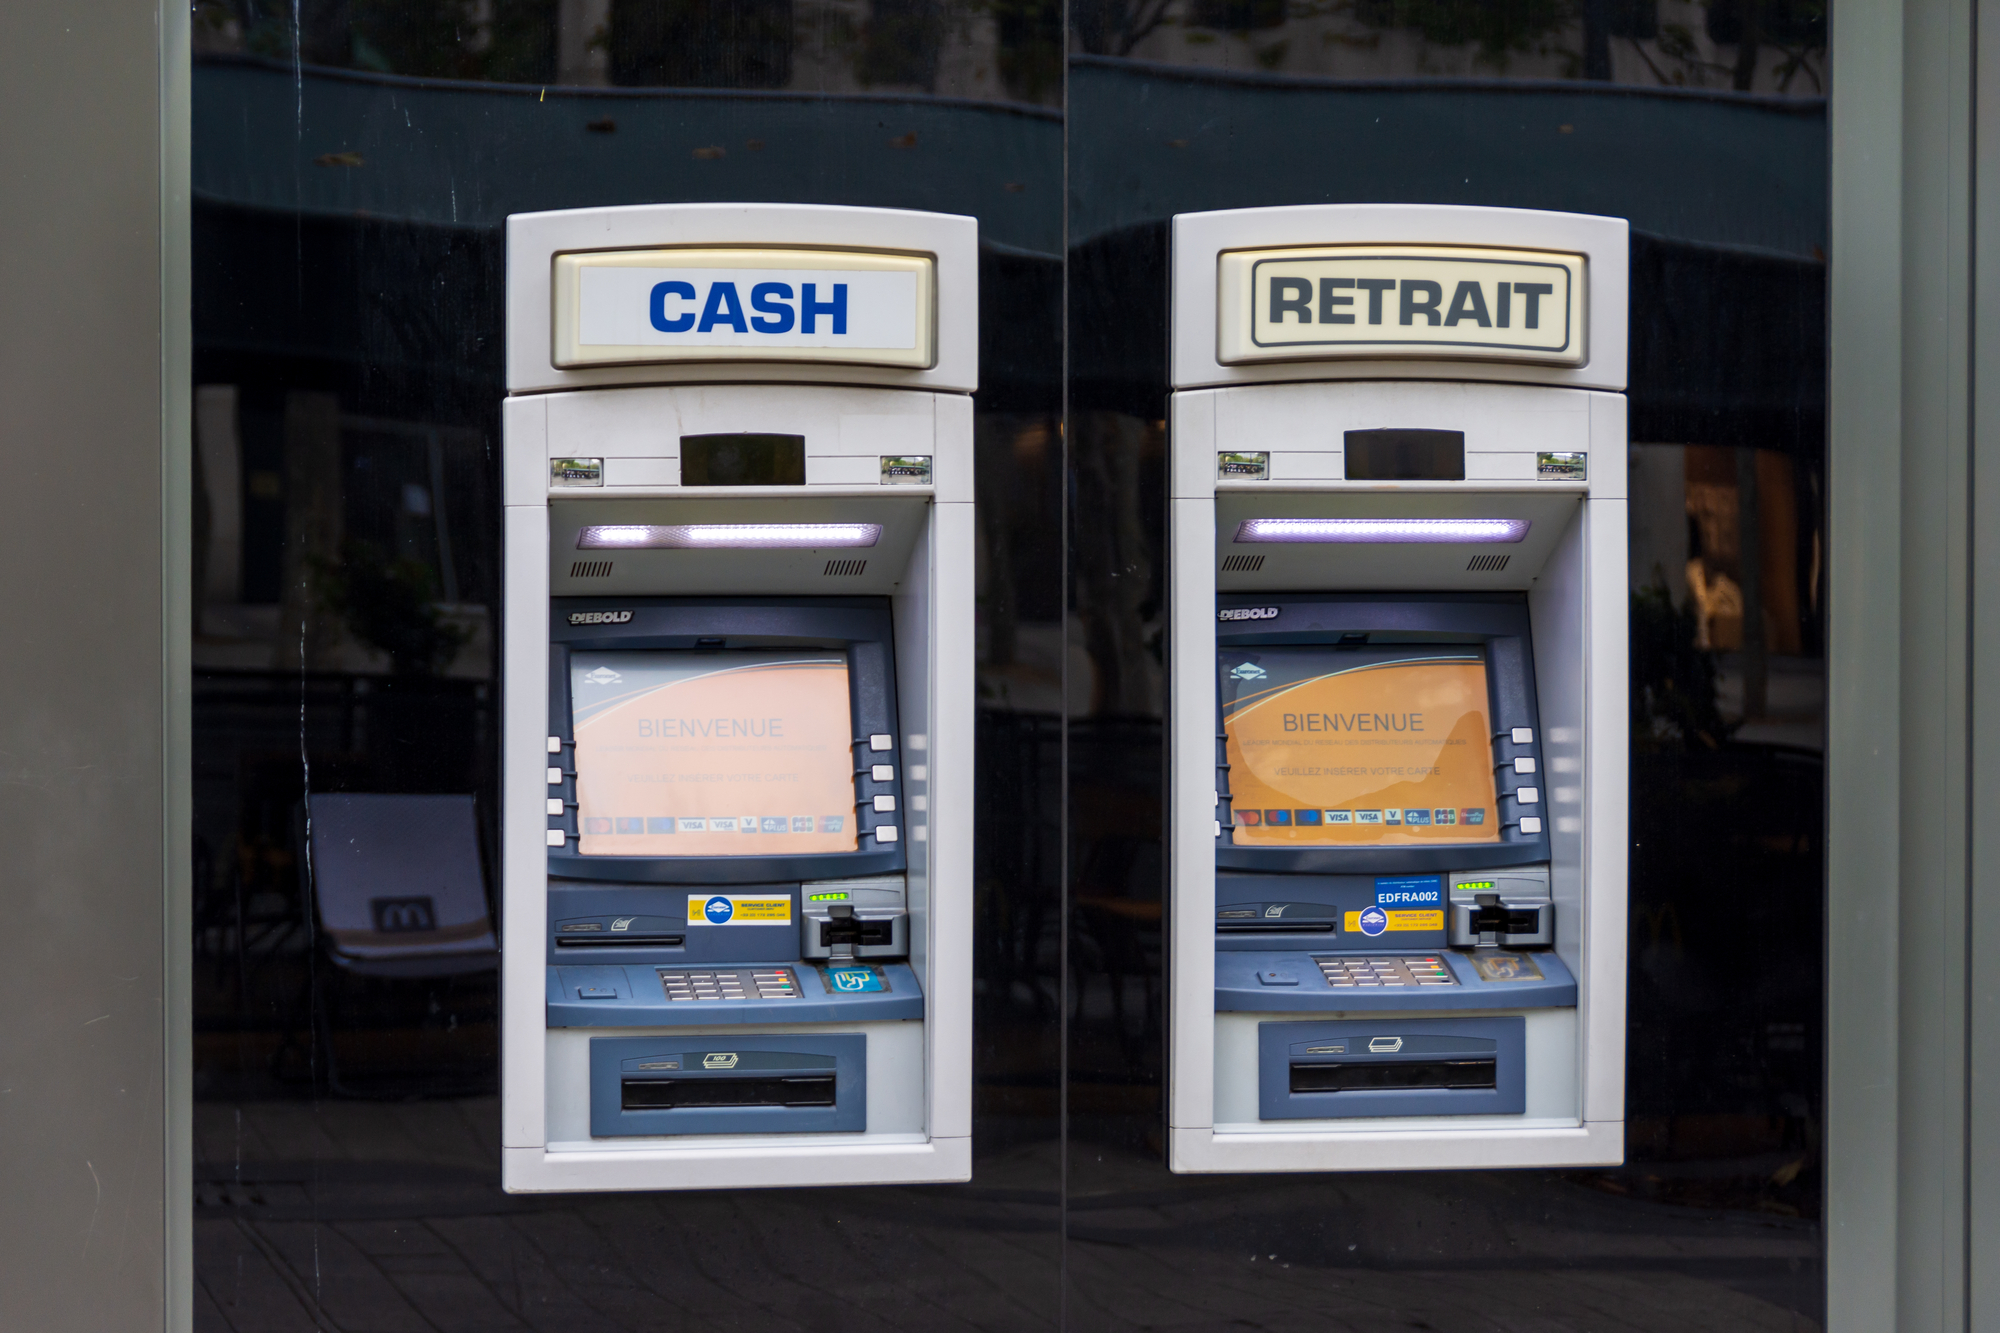 Paris, France: Bilingual ATM machines in Paris